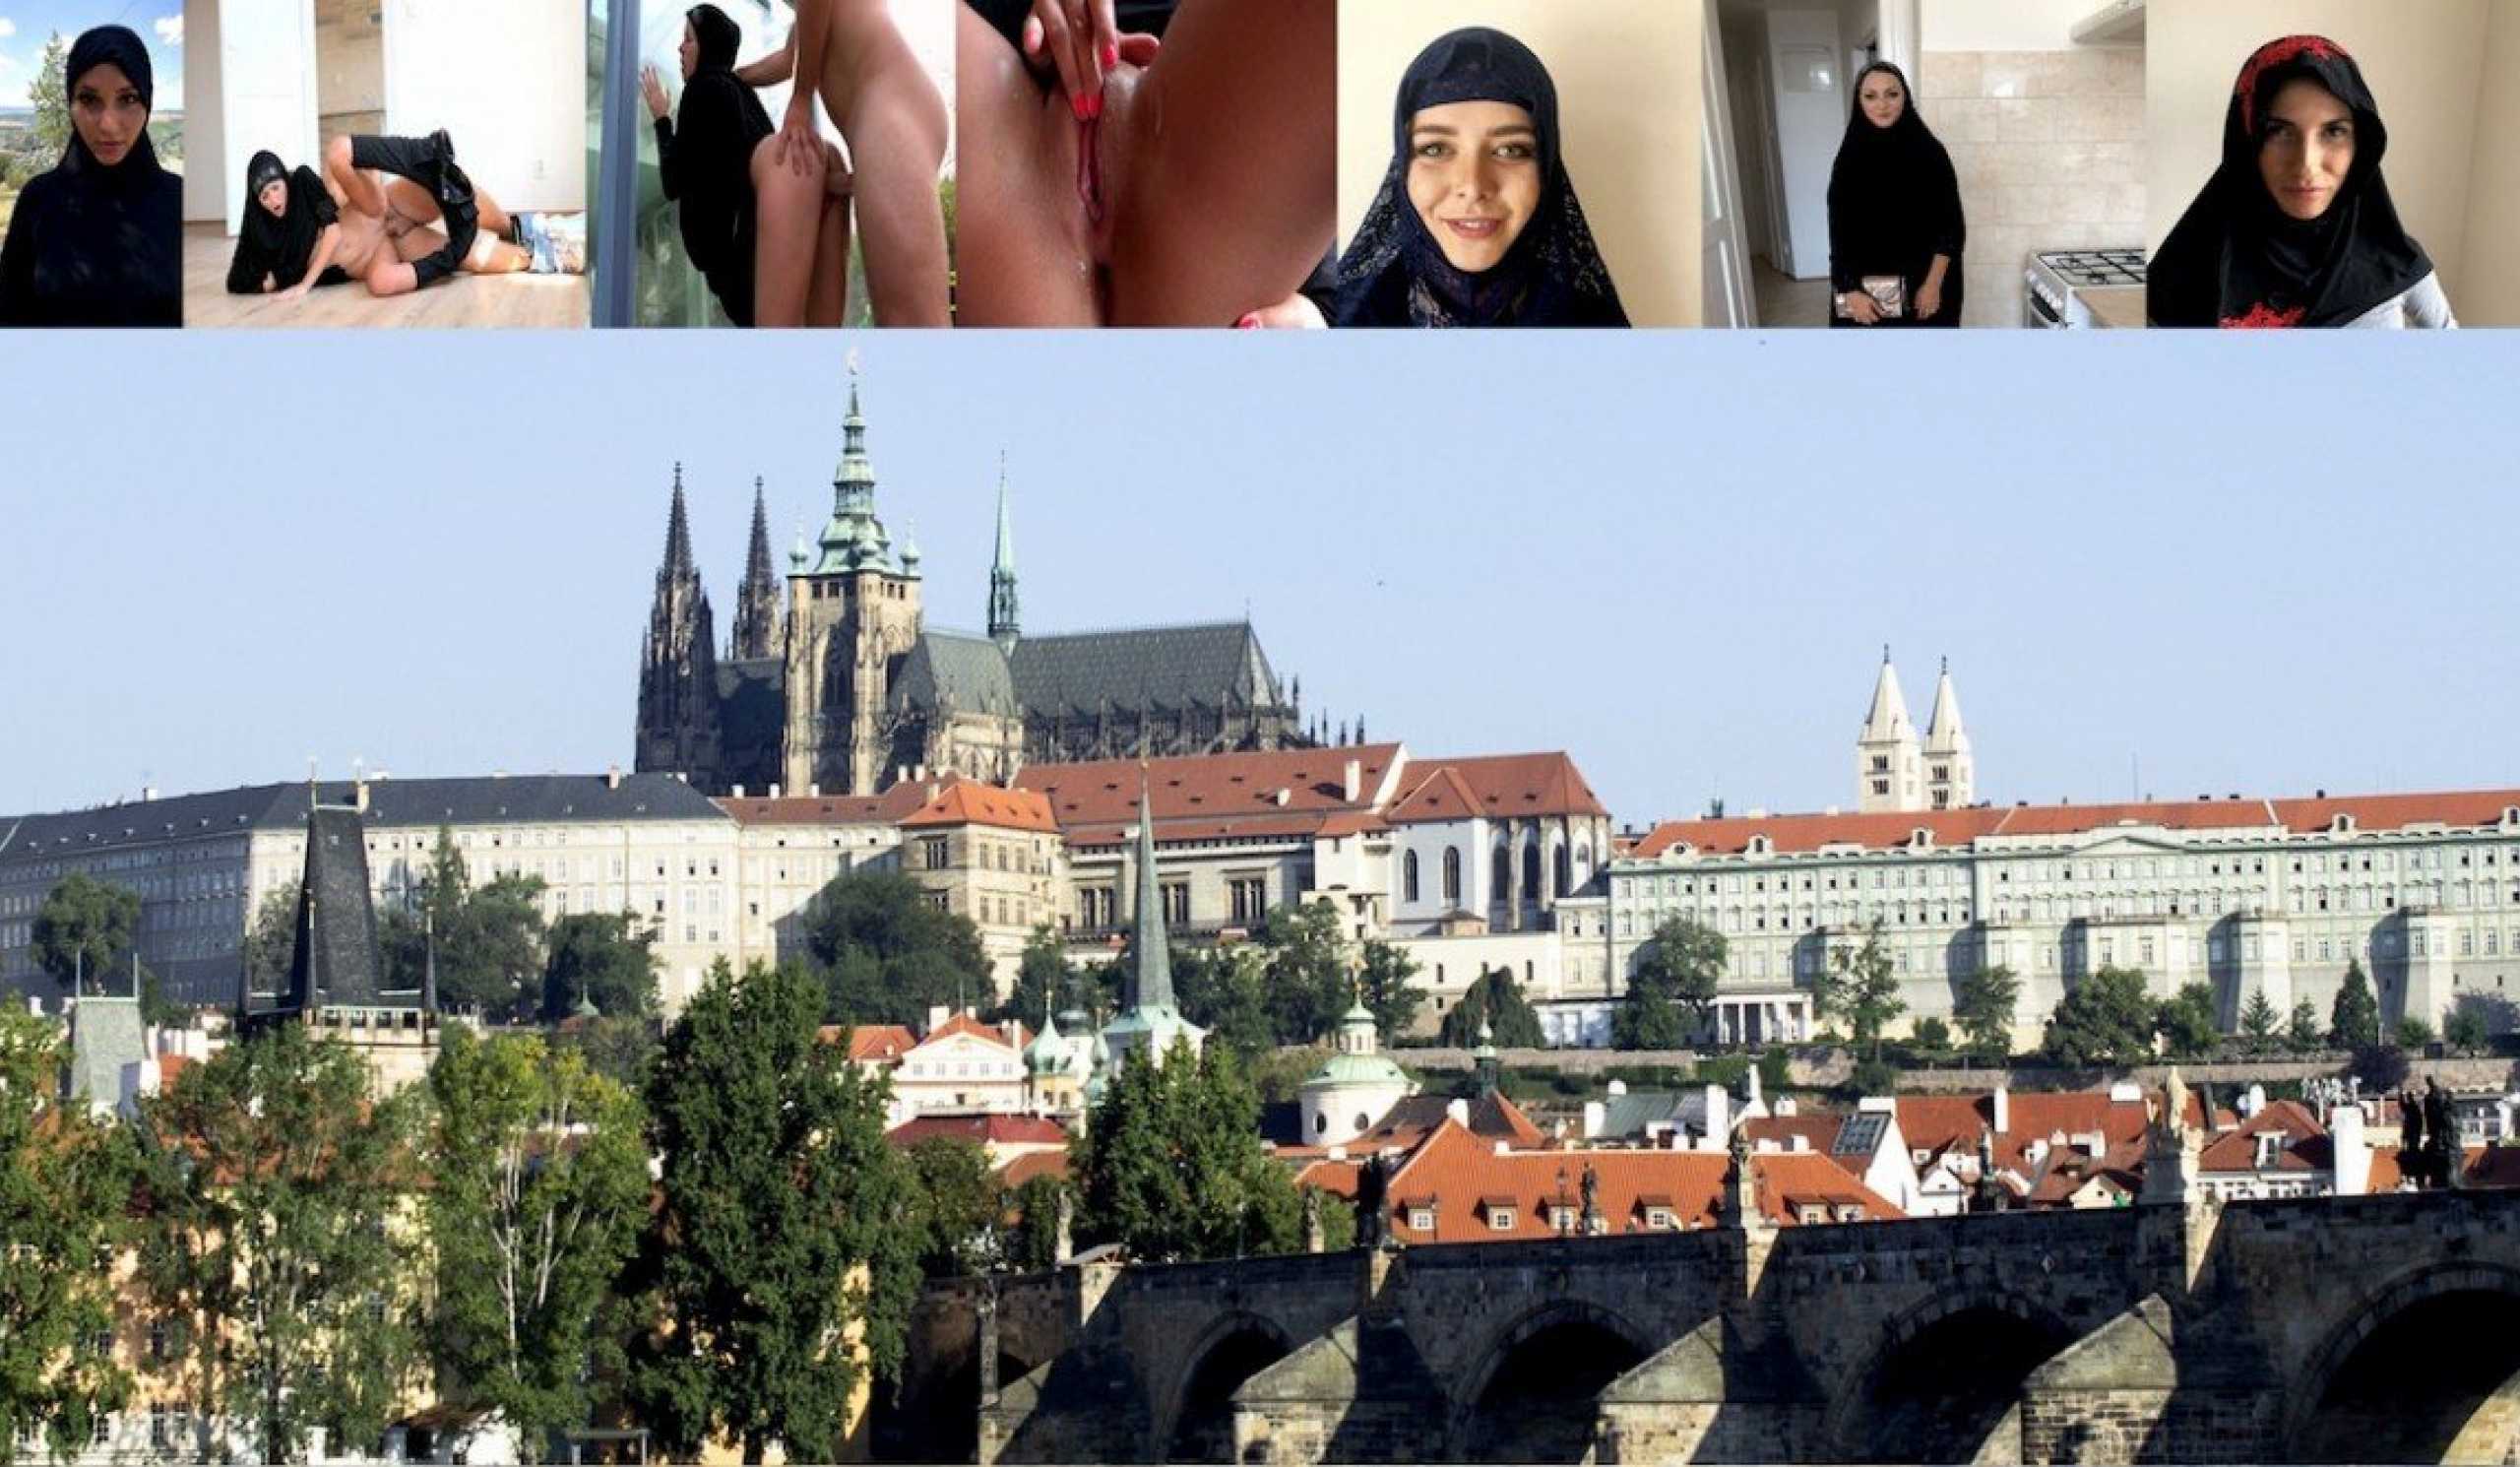 Musalman Girl Hot Sex - Czech muslim girl fucking hard | Sex With Muslims